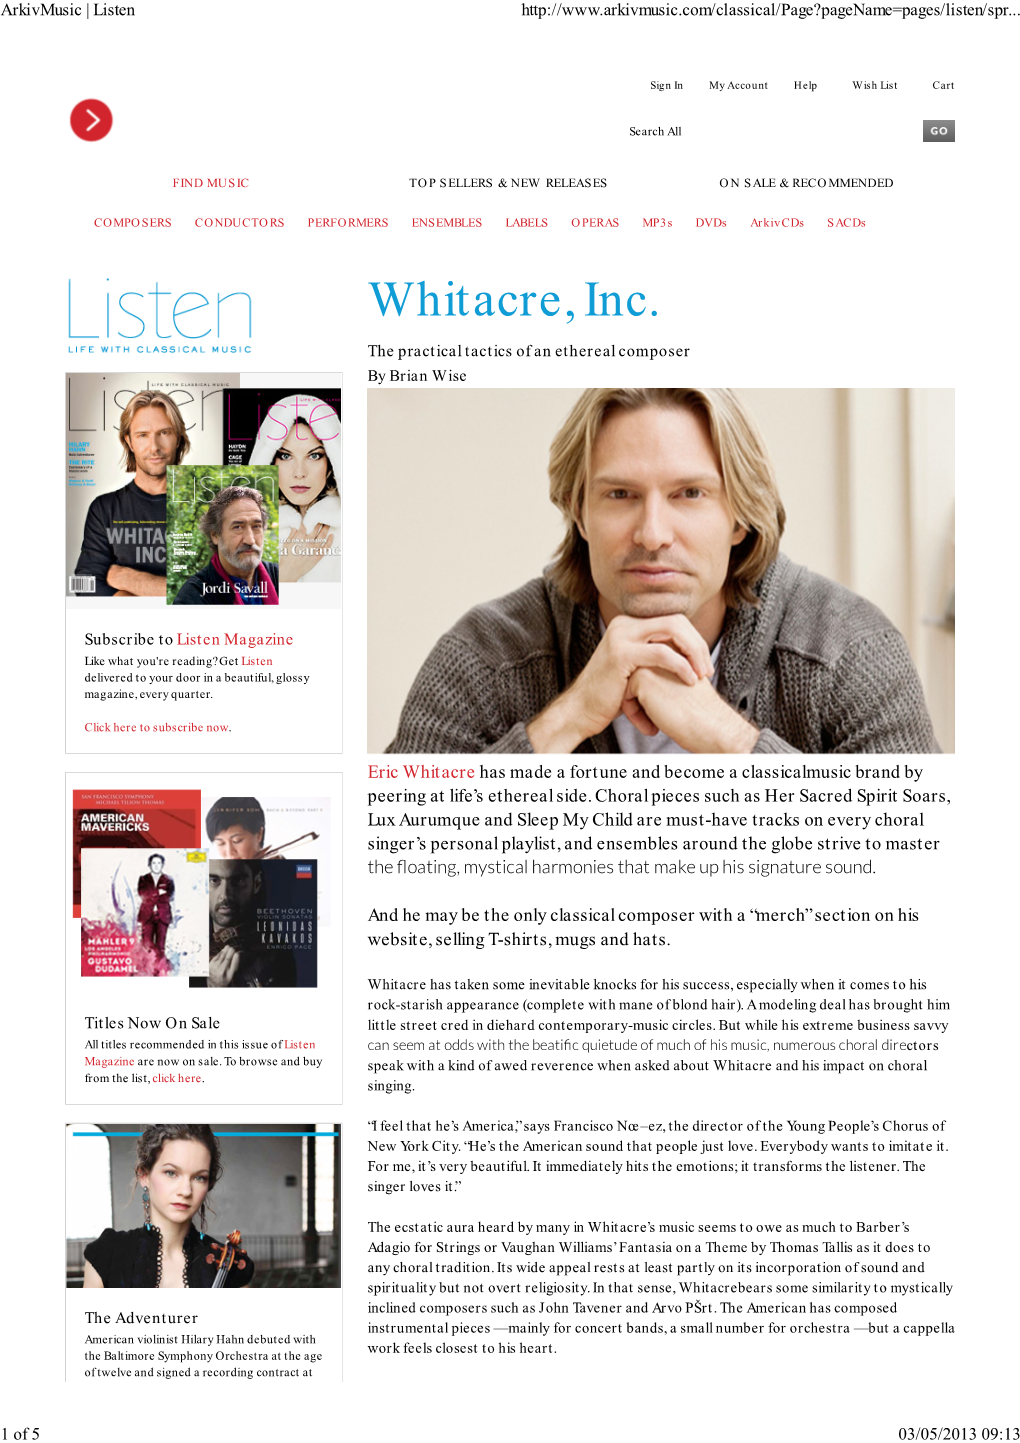 Whitacre, Inc